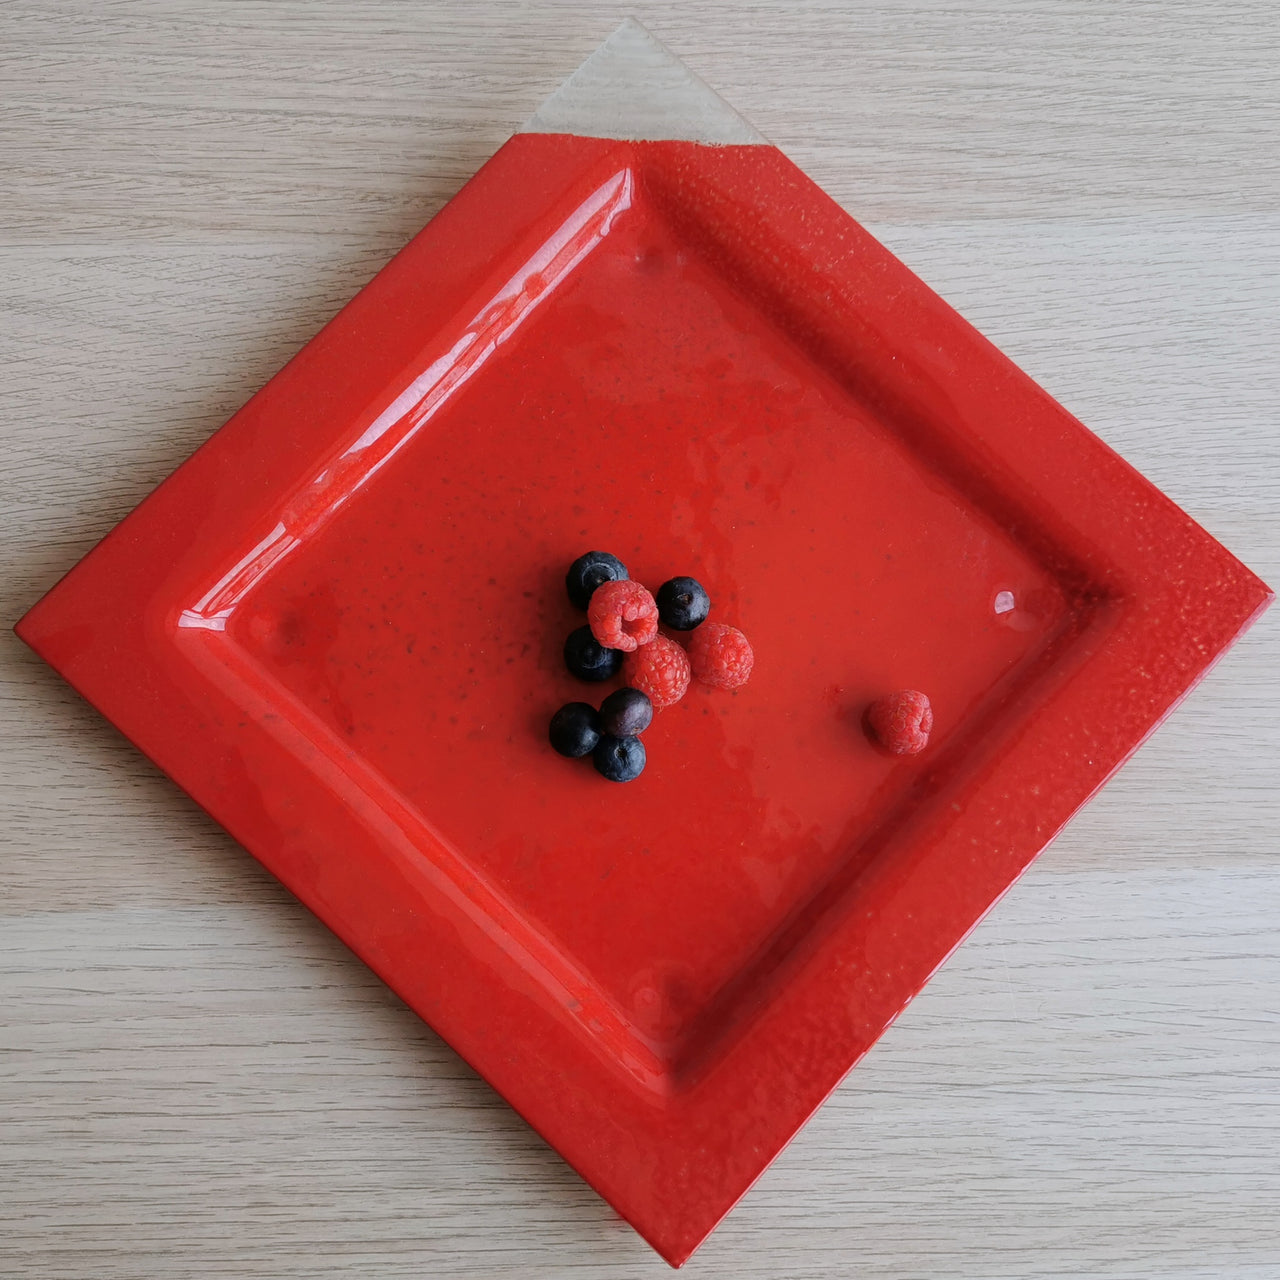 New York Minimalist Poppy&Transparent Glass Dessert Plate. Poppy&Transparent Glass Plate - 9 5/8"x9 5/8" (24,5cm.x24,5cm.)